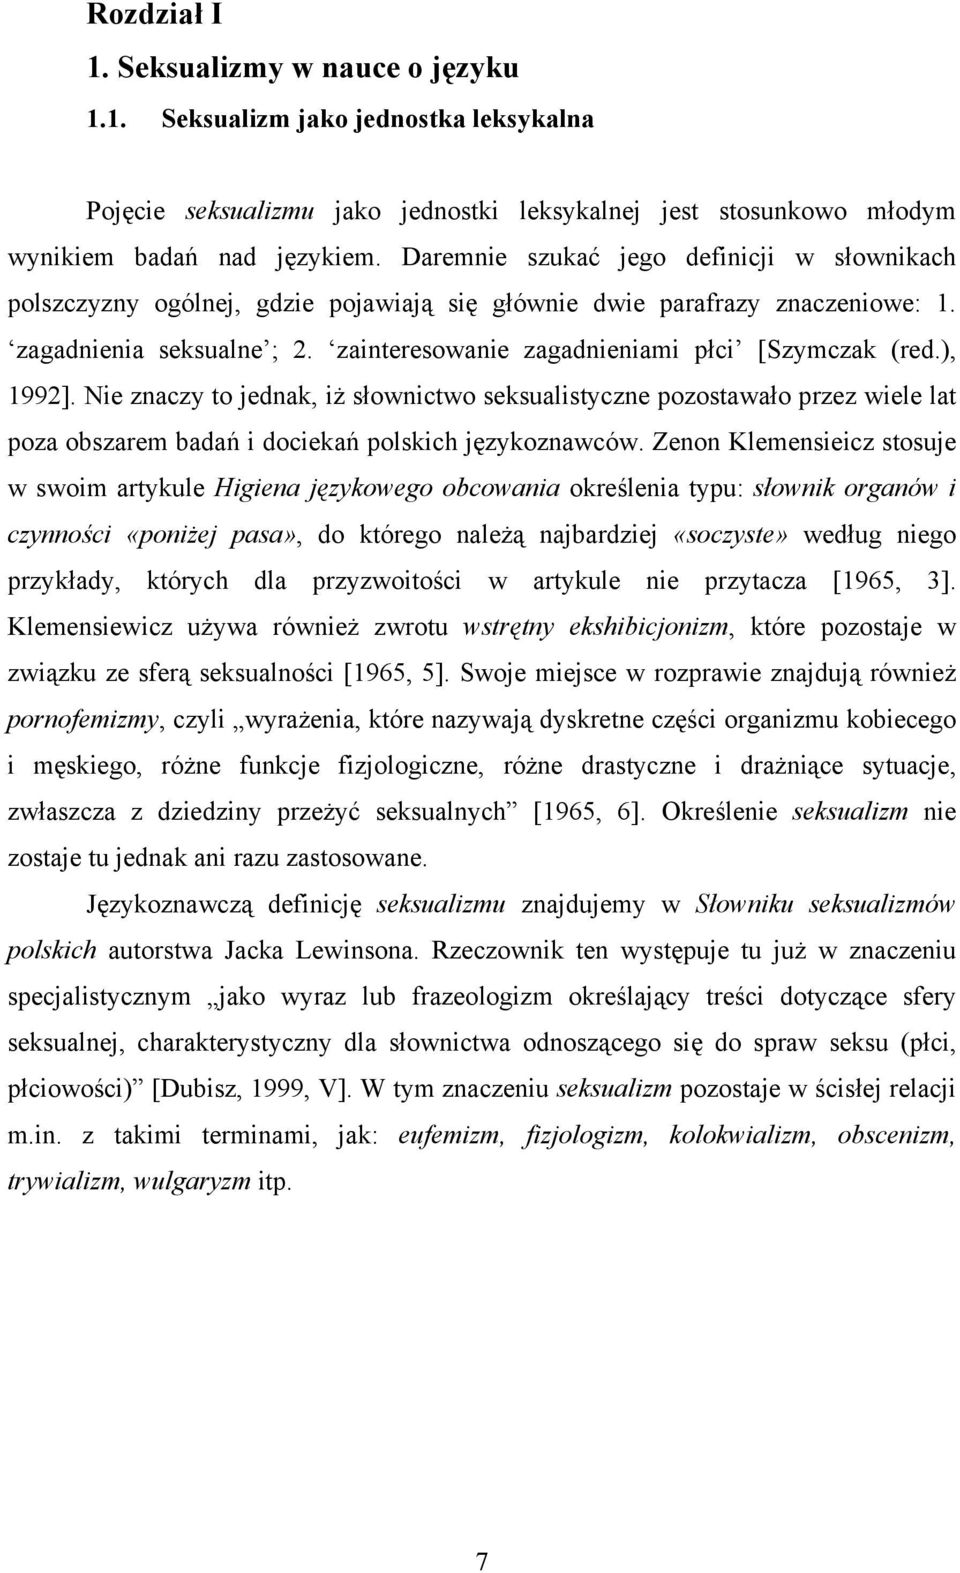 zainteresowanie zagadnieniami płci [Szymczak (red.), 1992]. Nie znaczy to jednak, iż słownictwo seksualistyczne pozostawało przez wiele lat poza obszarem badań i dociekań polskich językoznawców.